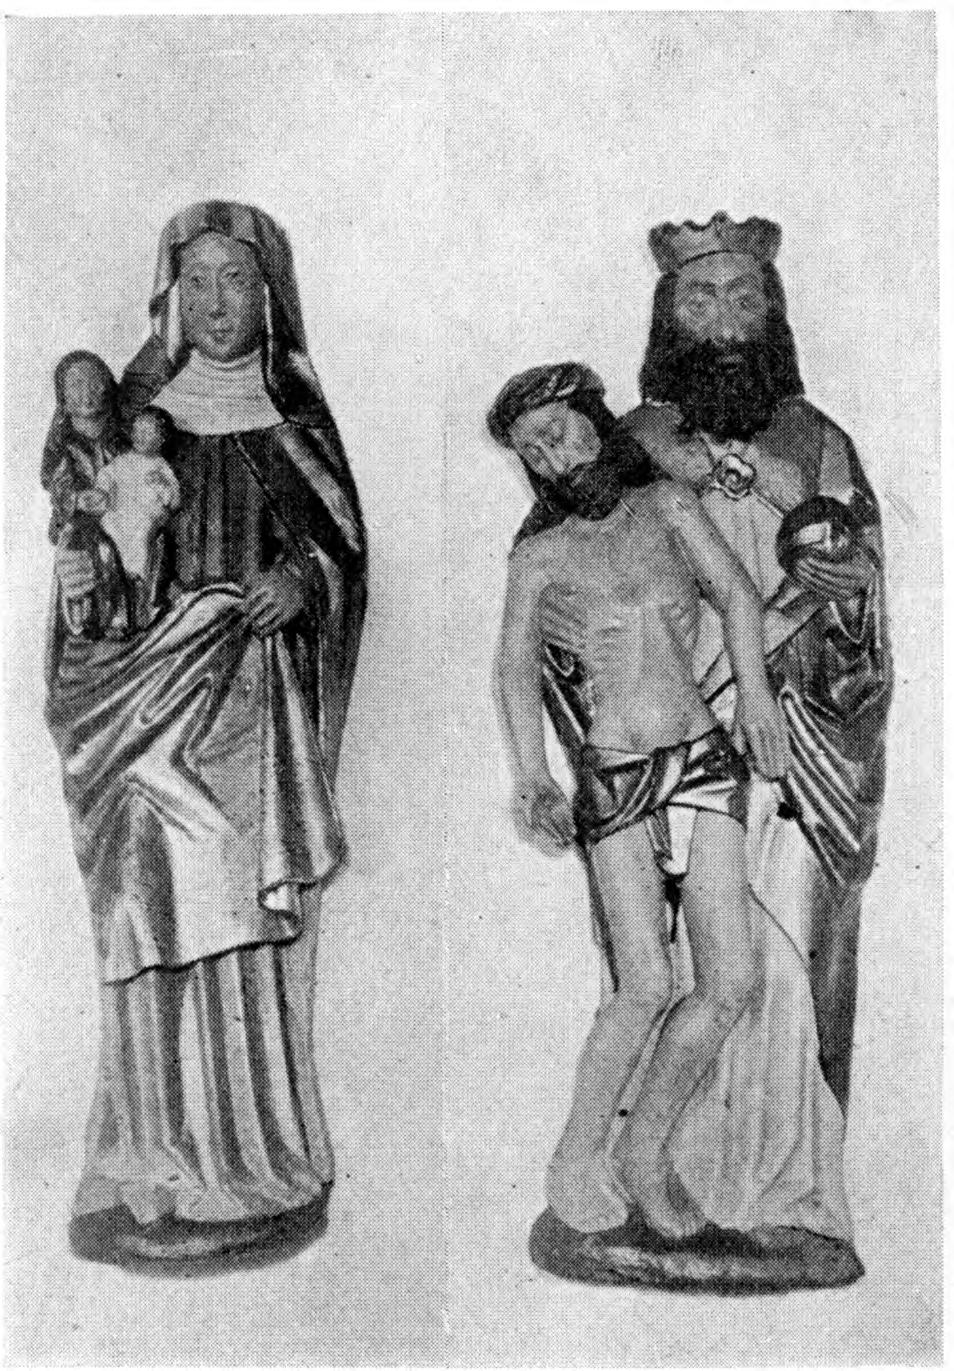 1500; bevaret er kun den 120 cm høje Figur med stærkt hældende Hoved, der bærer Turbankrone over lokket Haar og har lukkede Øjne; Lændeklædet er smalt, med Midtsnip, Fødderne overlagte.